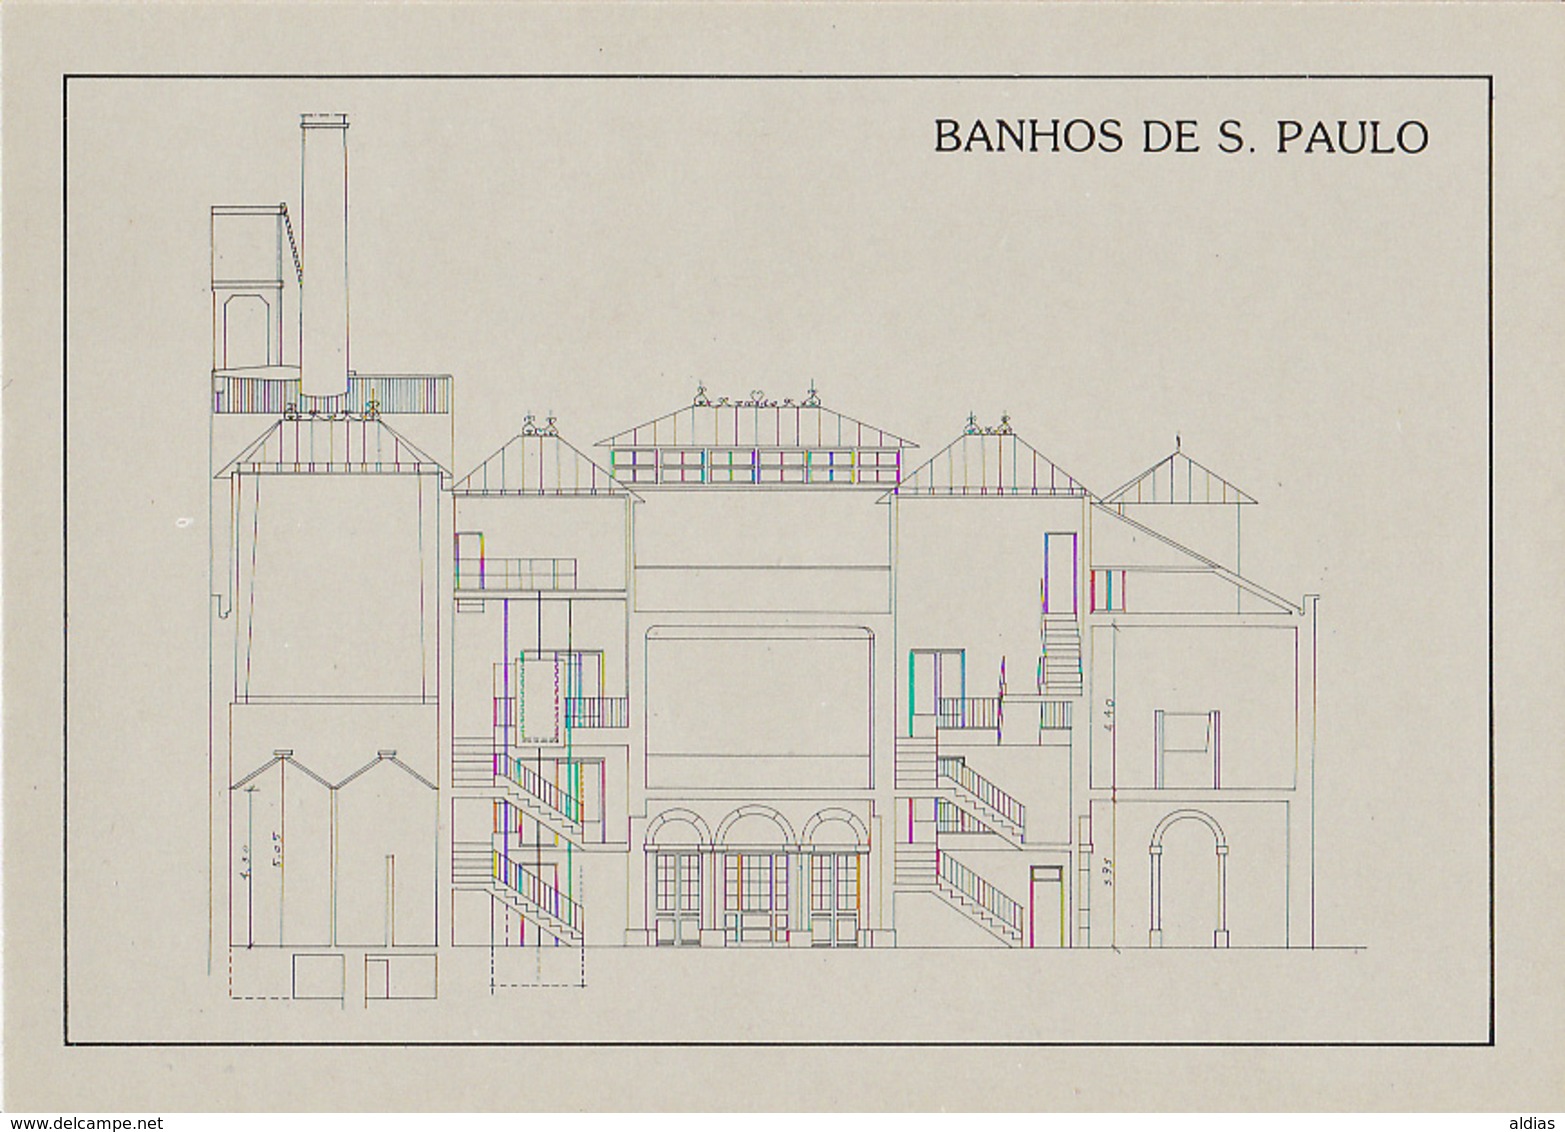 Portugal - Lisboa - Banhos De S. Paulo - 6 Postais Com Envelope - Planta E Localização (1987) - Lisboa